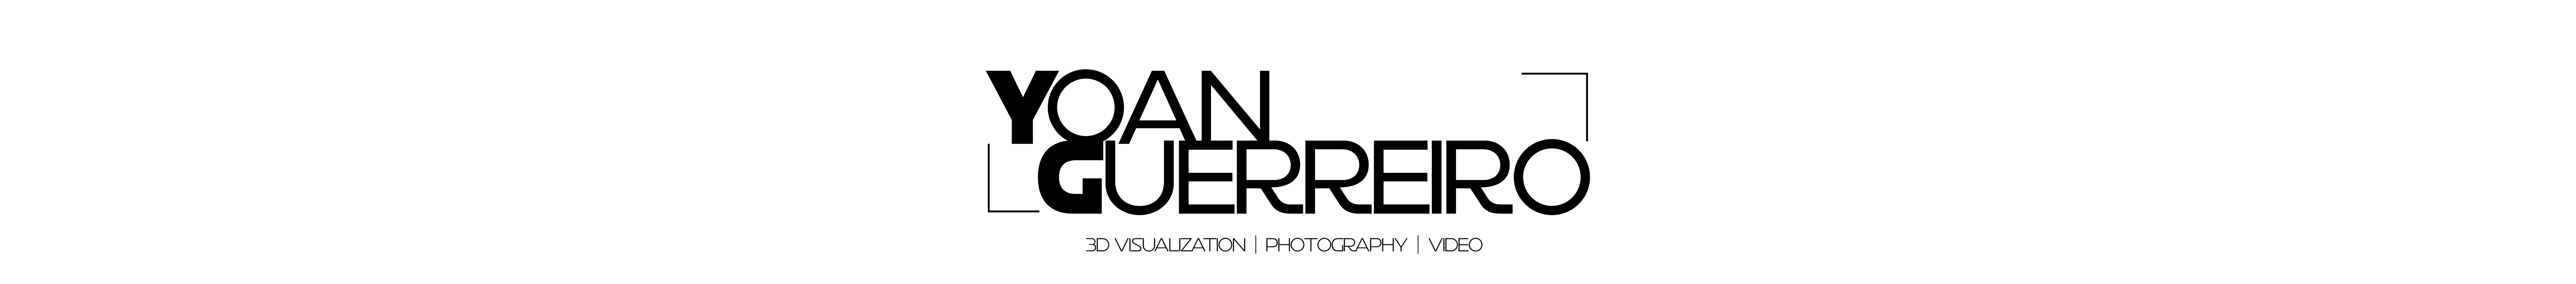 Yoan Guerreiro's profile banner